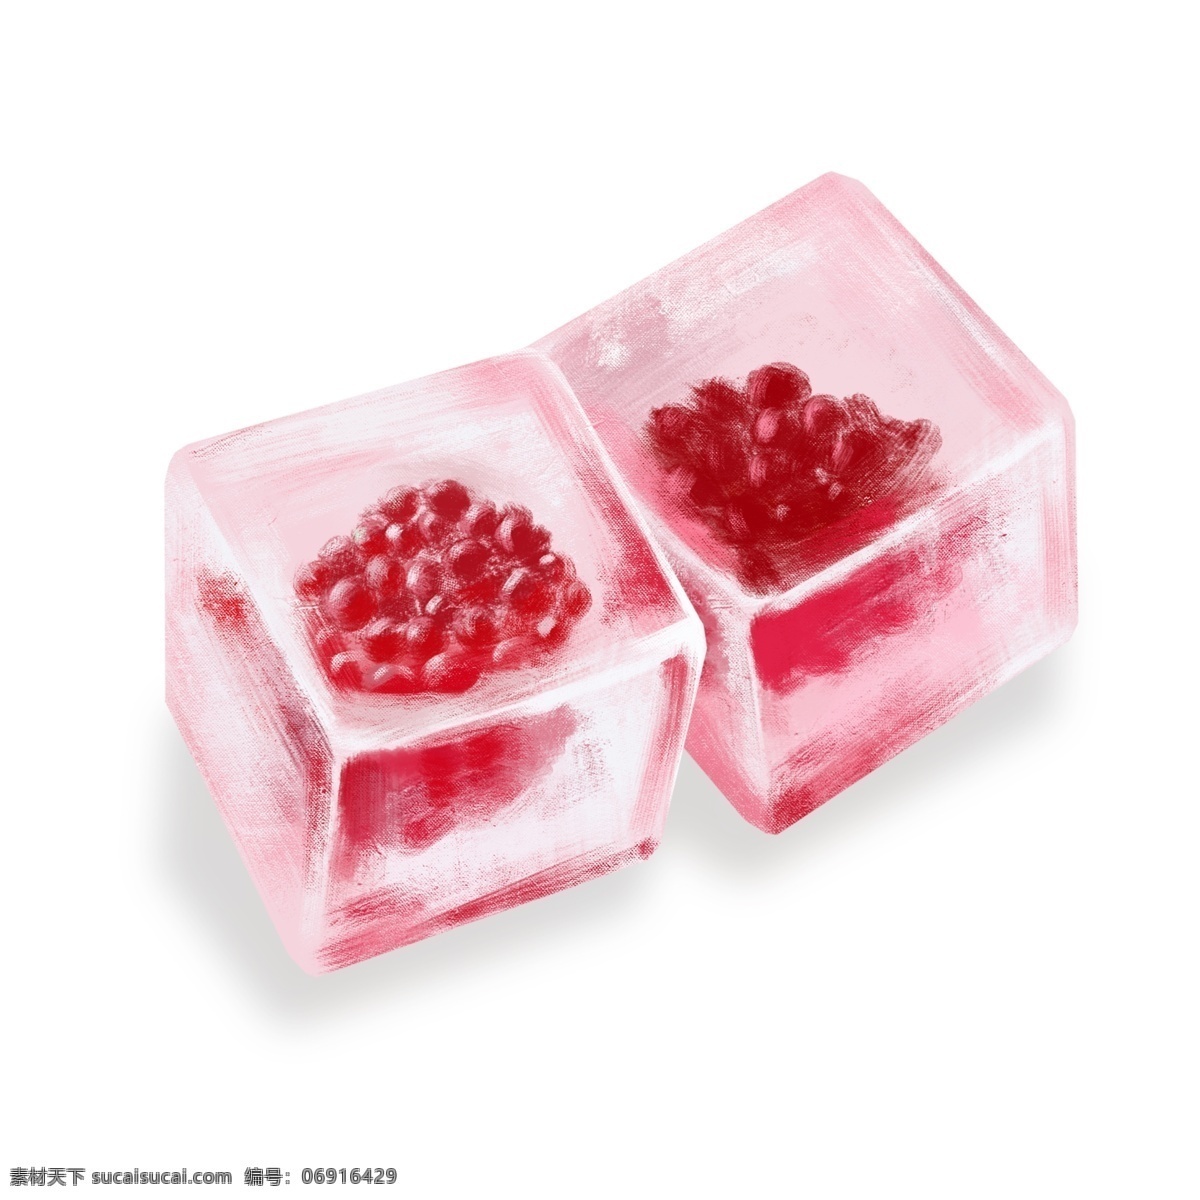 红色 果实 立体 冰块 降温 红色冰块 红色果实冰块 立体冰块 固体 水 水资源 冰爽冰块插画